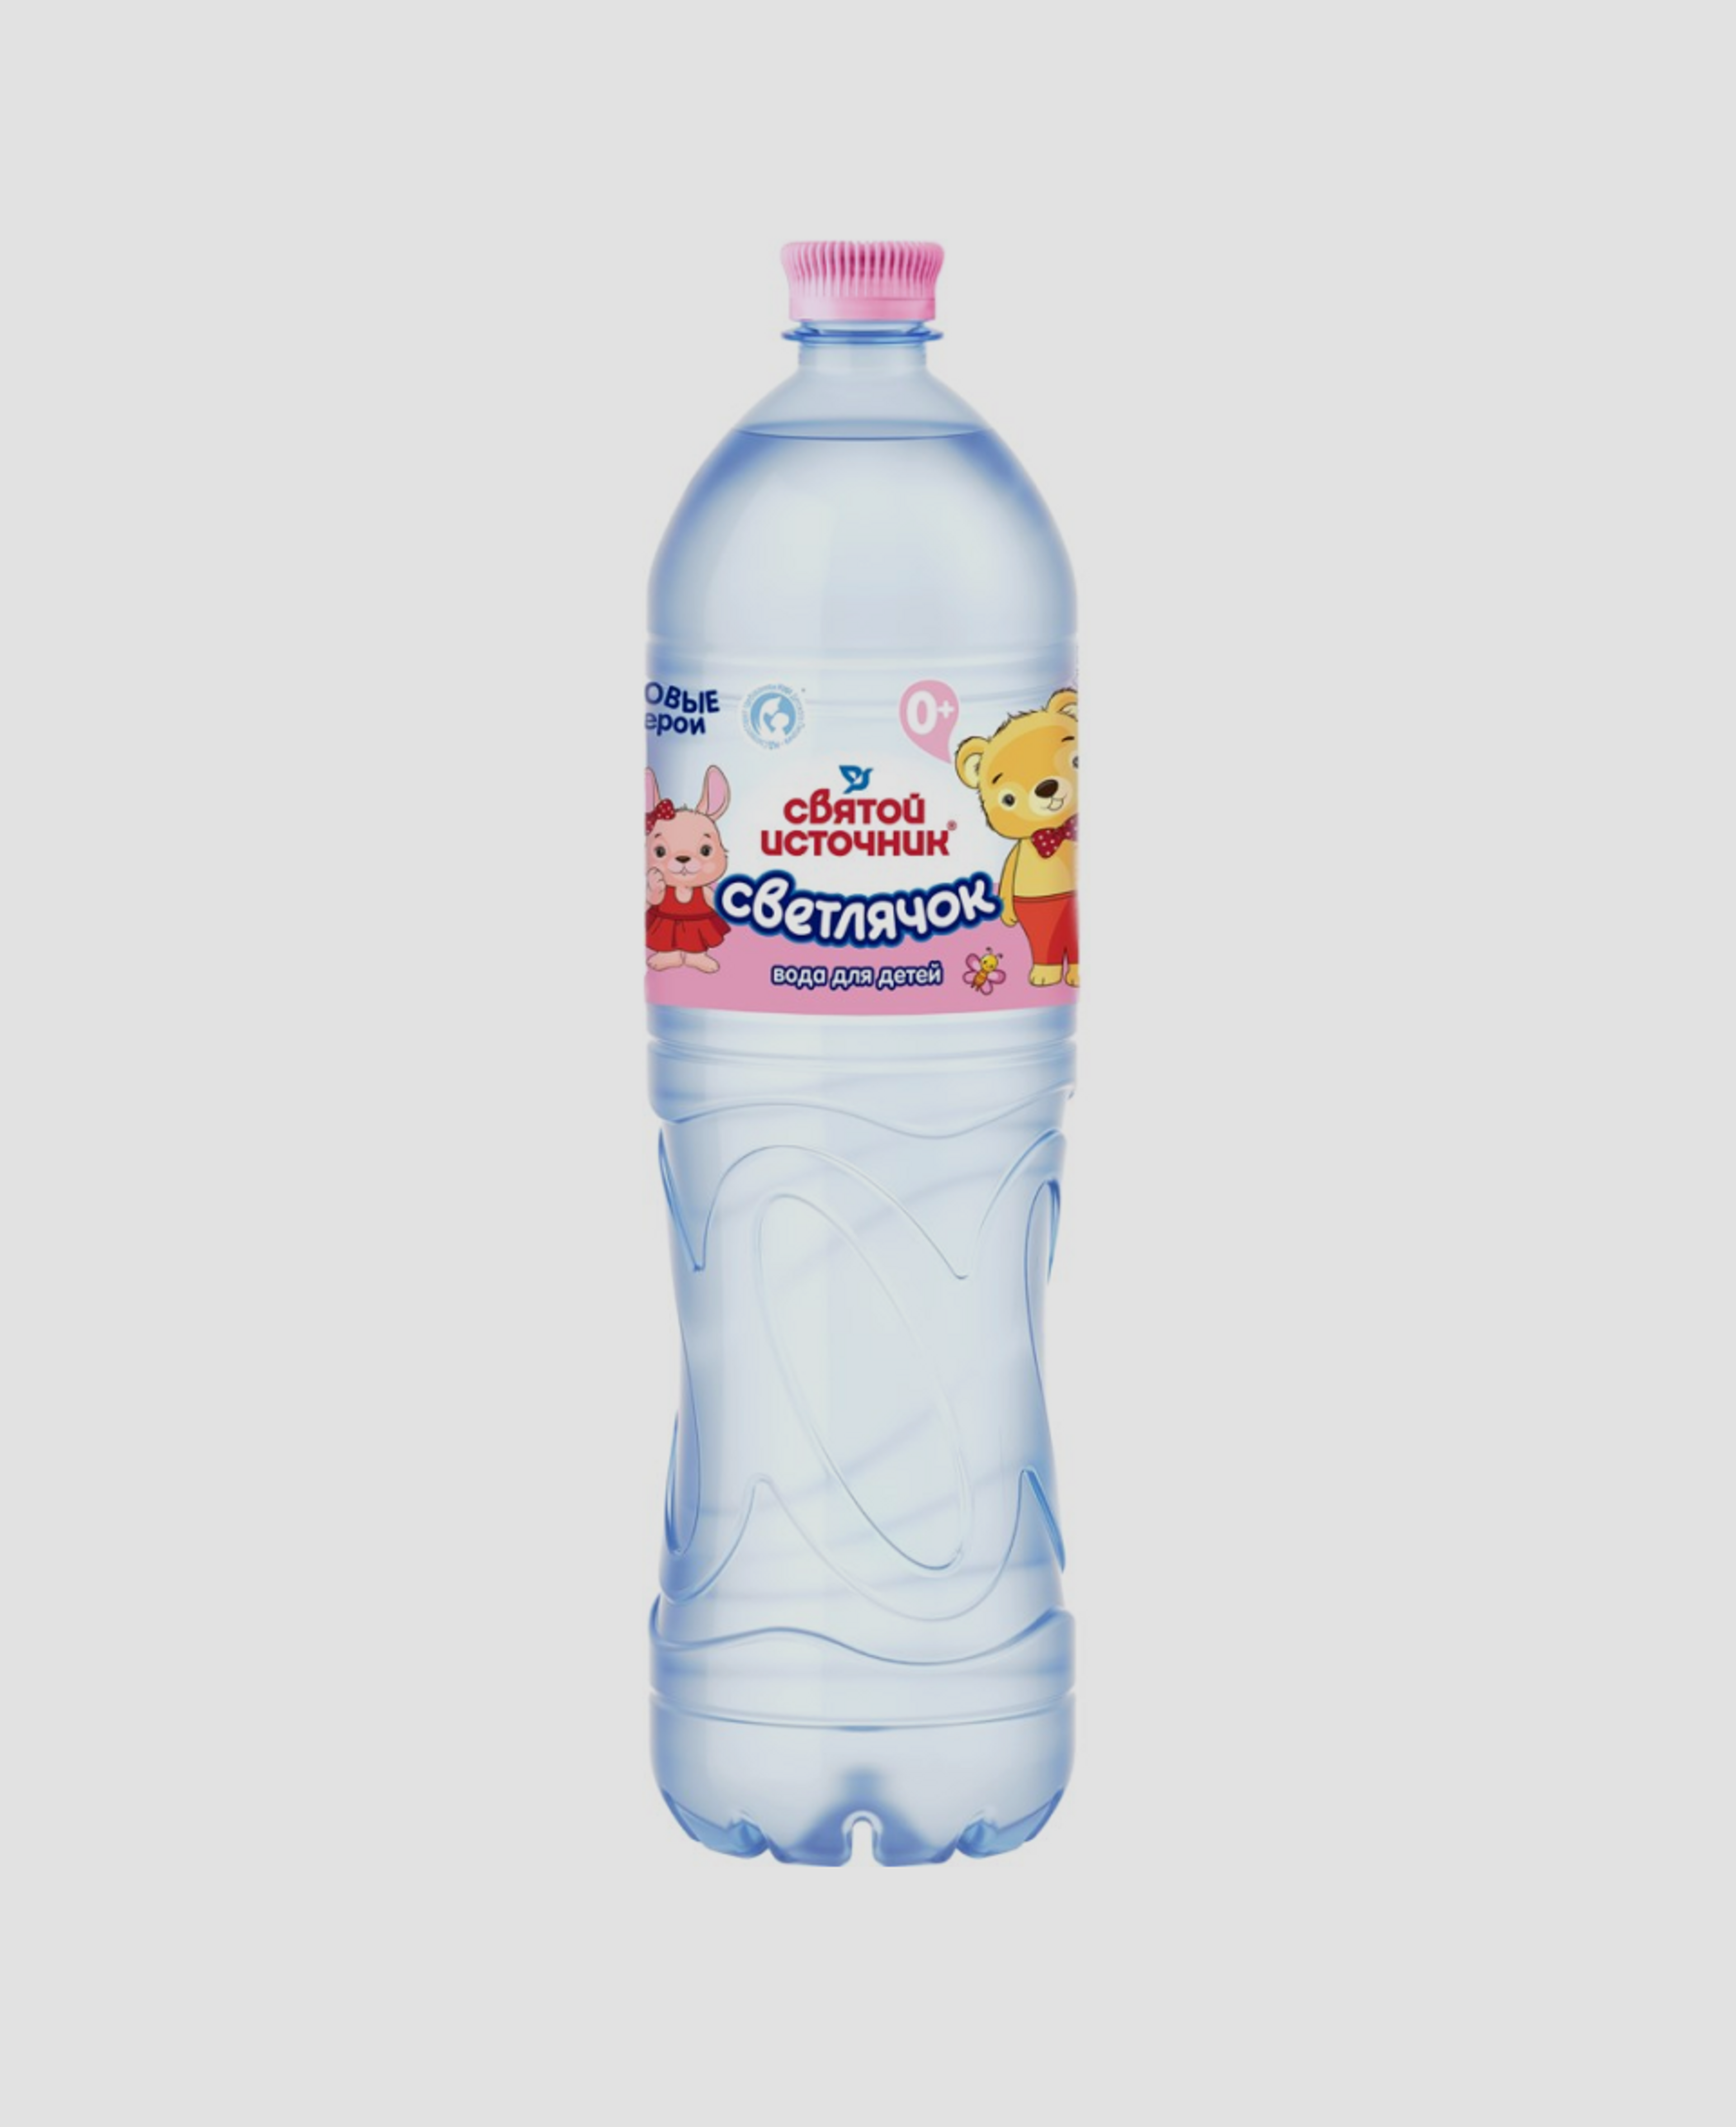 Детская питьевая вода «Святой источник Светлячок»